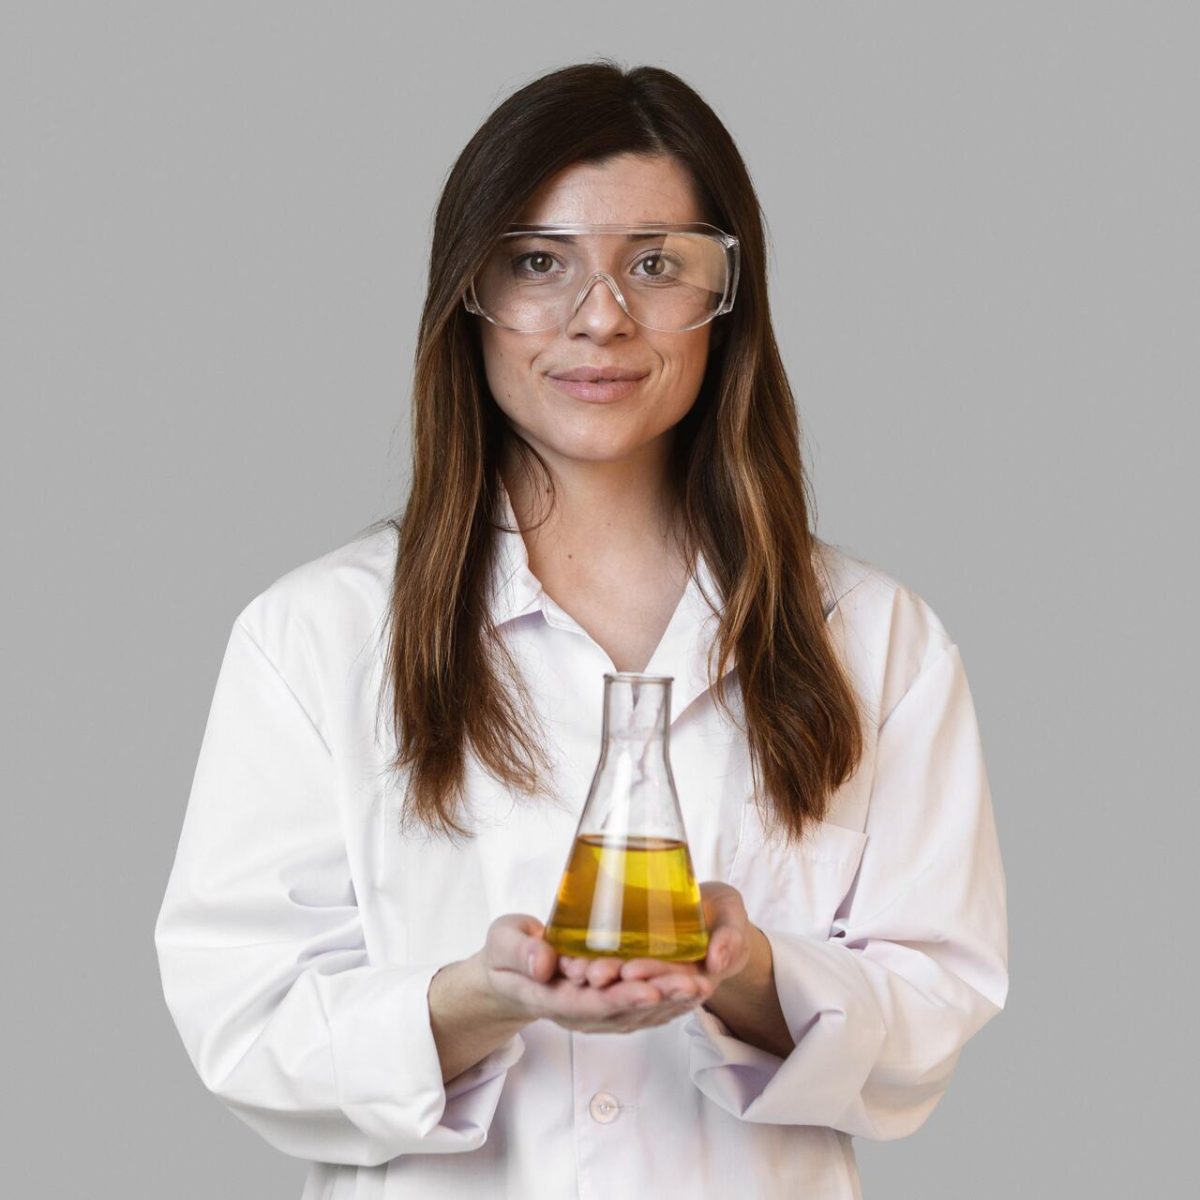 Estudante de química com elementos químicos, óculos de proteção e jaleco branco